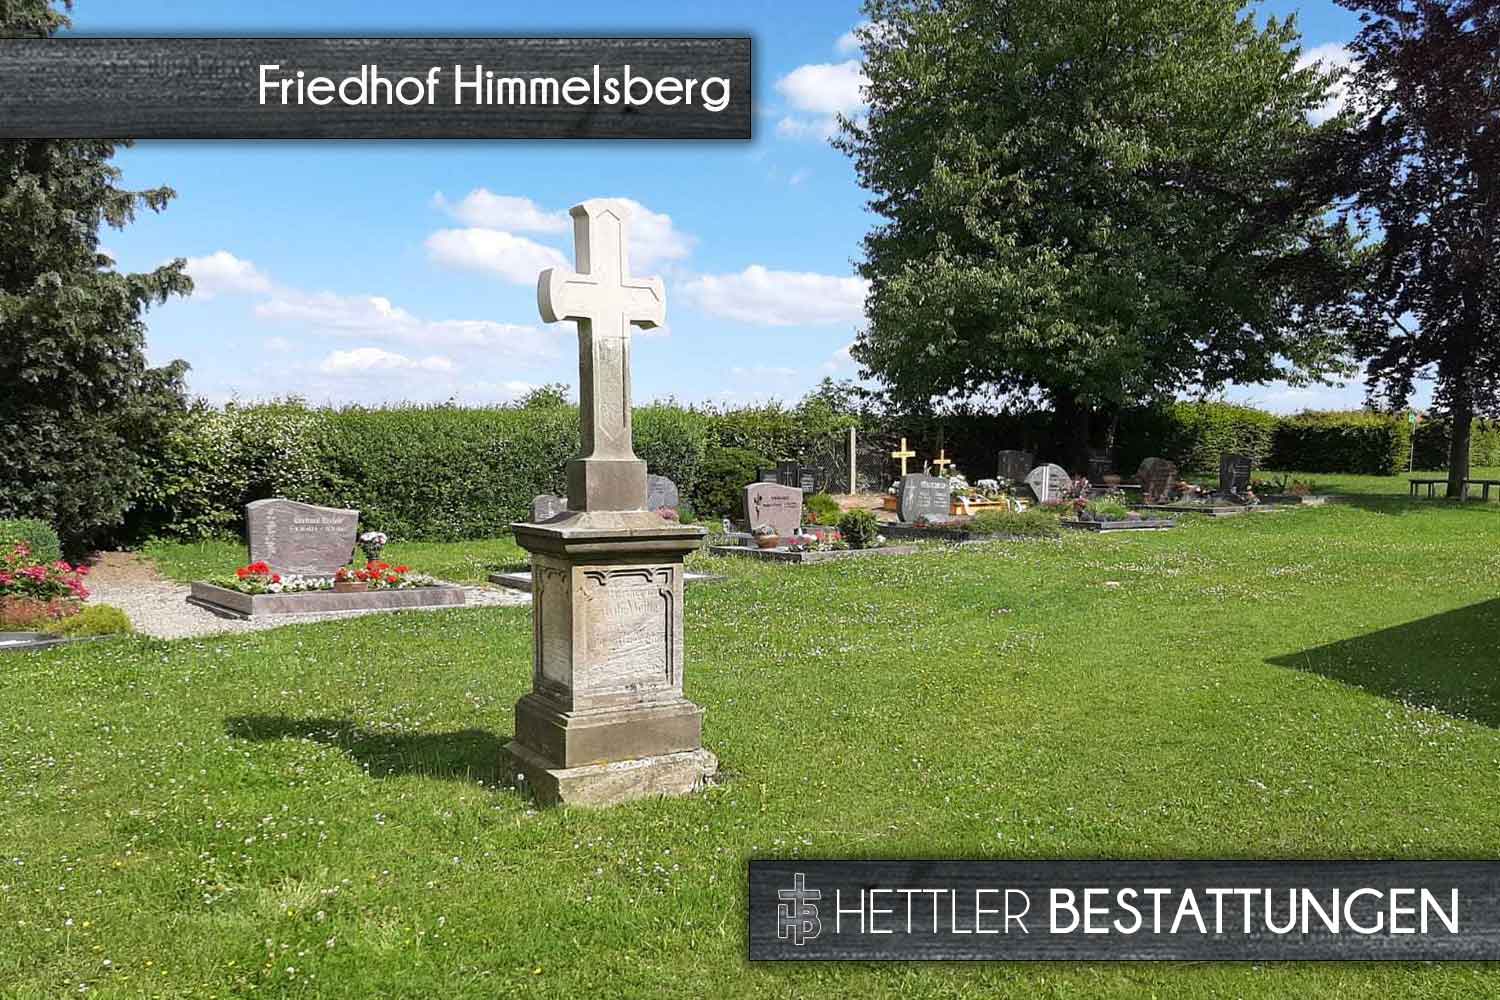 Friedhof in Himmelsberg. Ihr Ort des Abschieds mit Hettler Bestattungen.